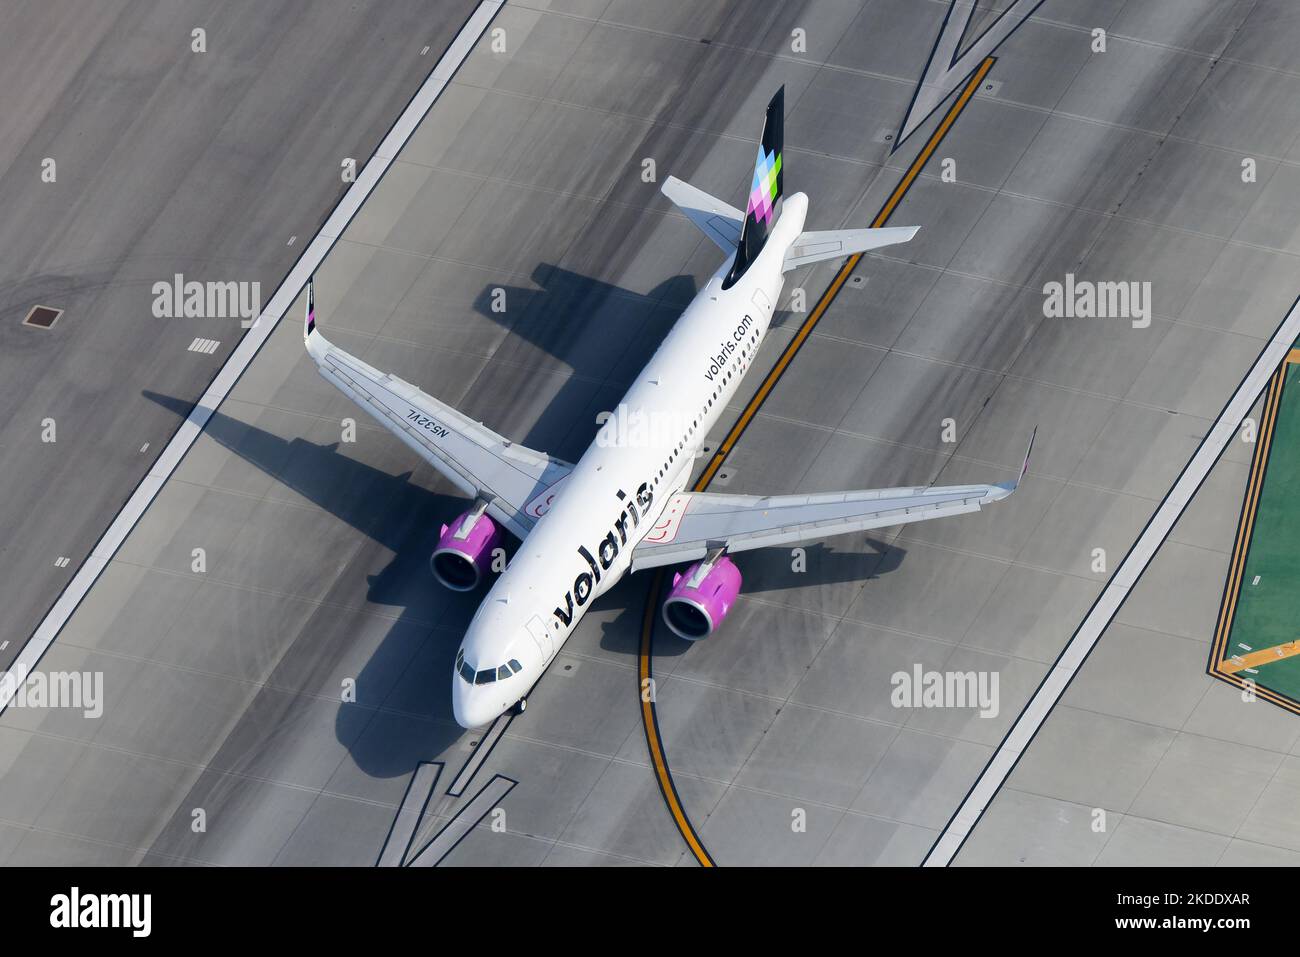 Volaris Airbus A320neo Flugzeug am Flughafen. Fluggesellschaft Volaris Mexico mit A320 Flugzeugen. Flugzeug registriert als N532VL. Stockfoto